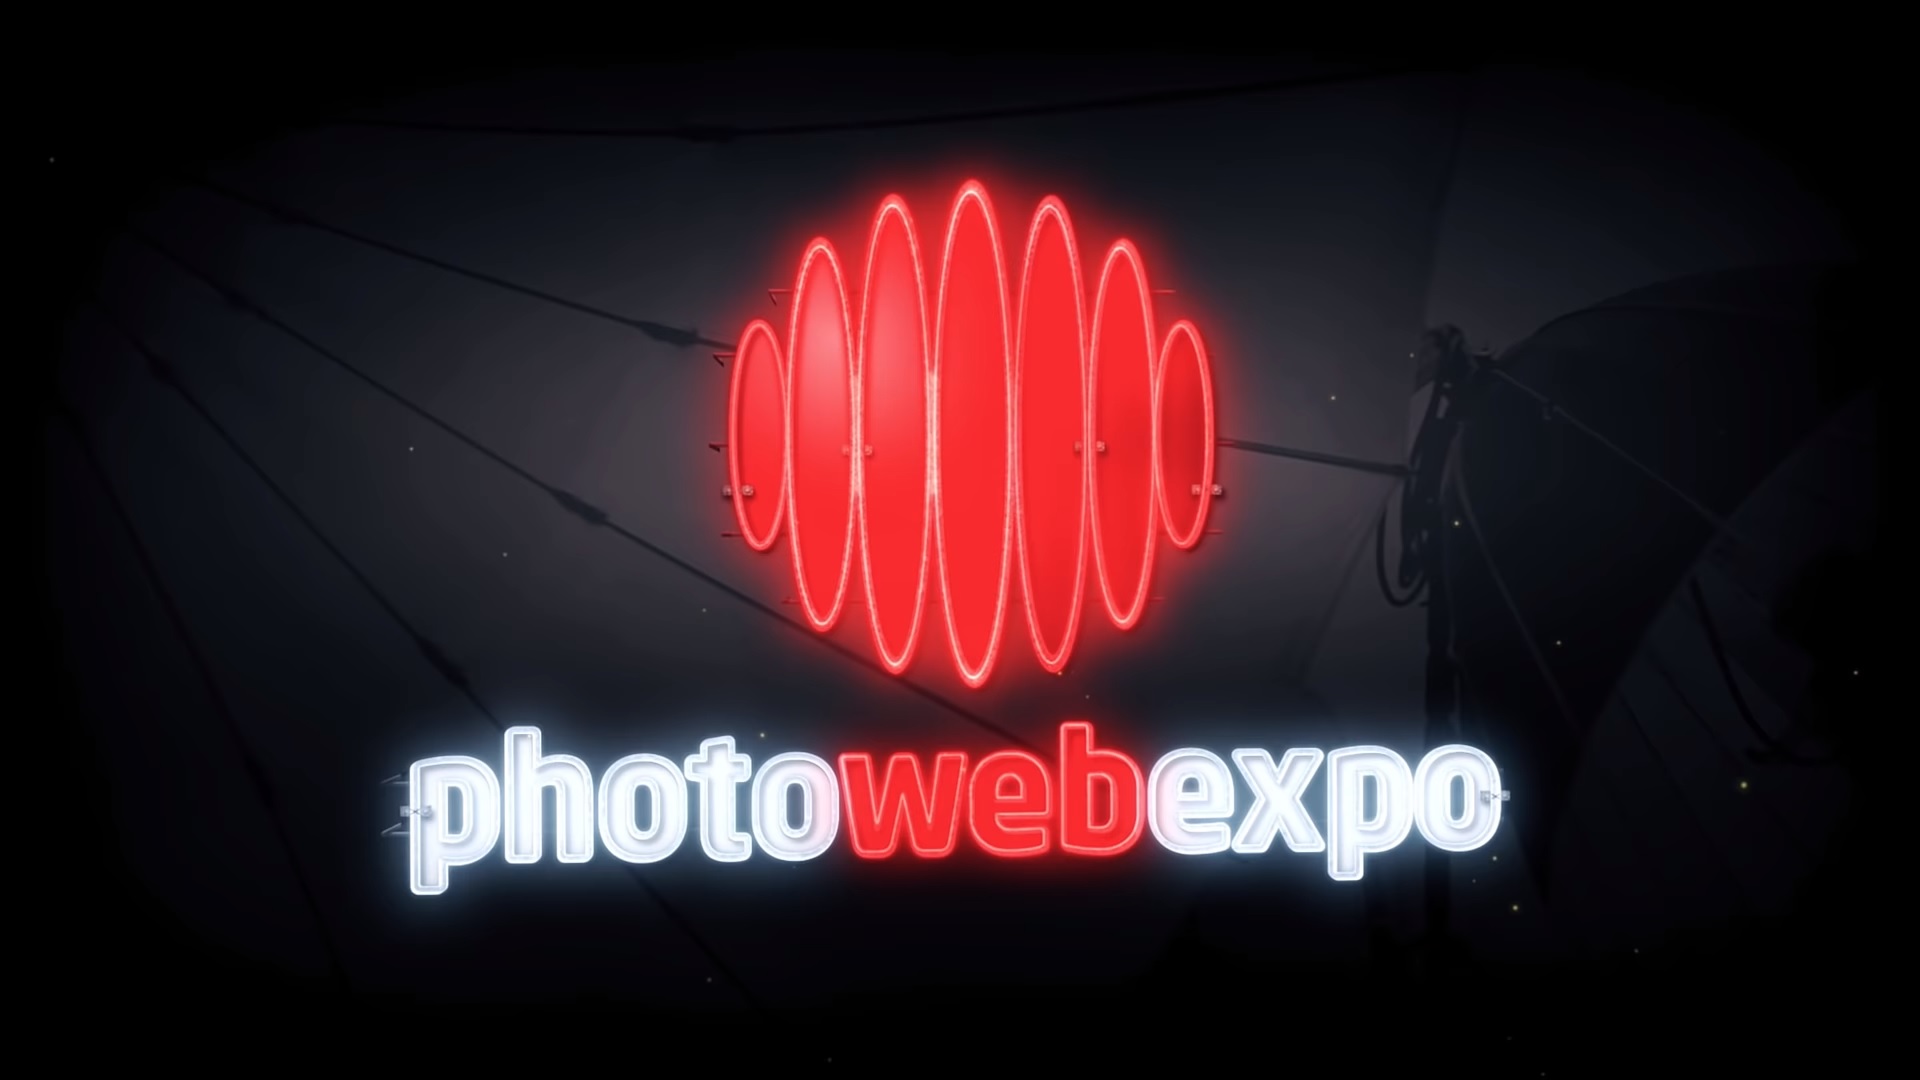   PhotoWebExpo